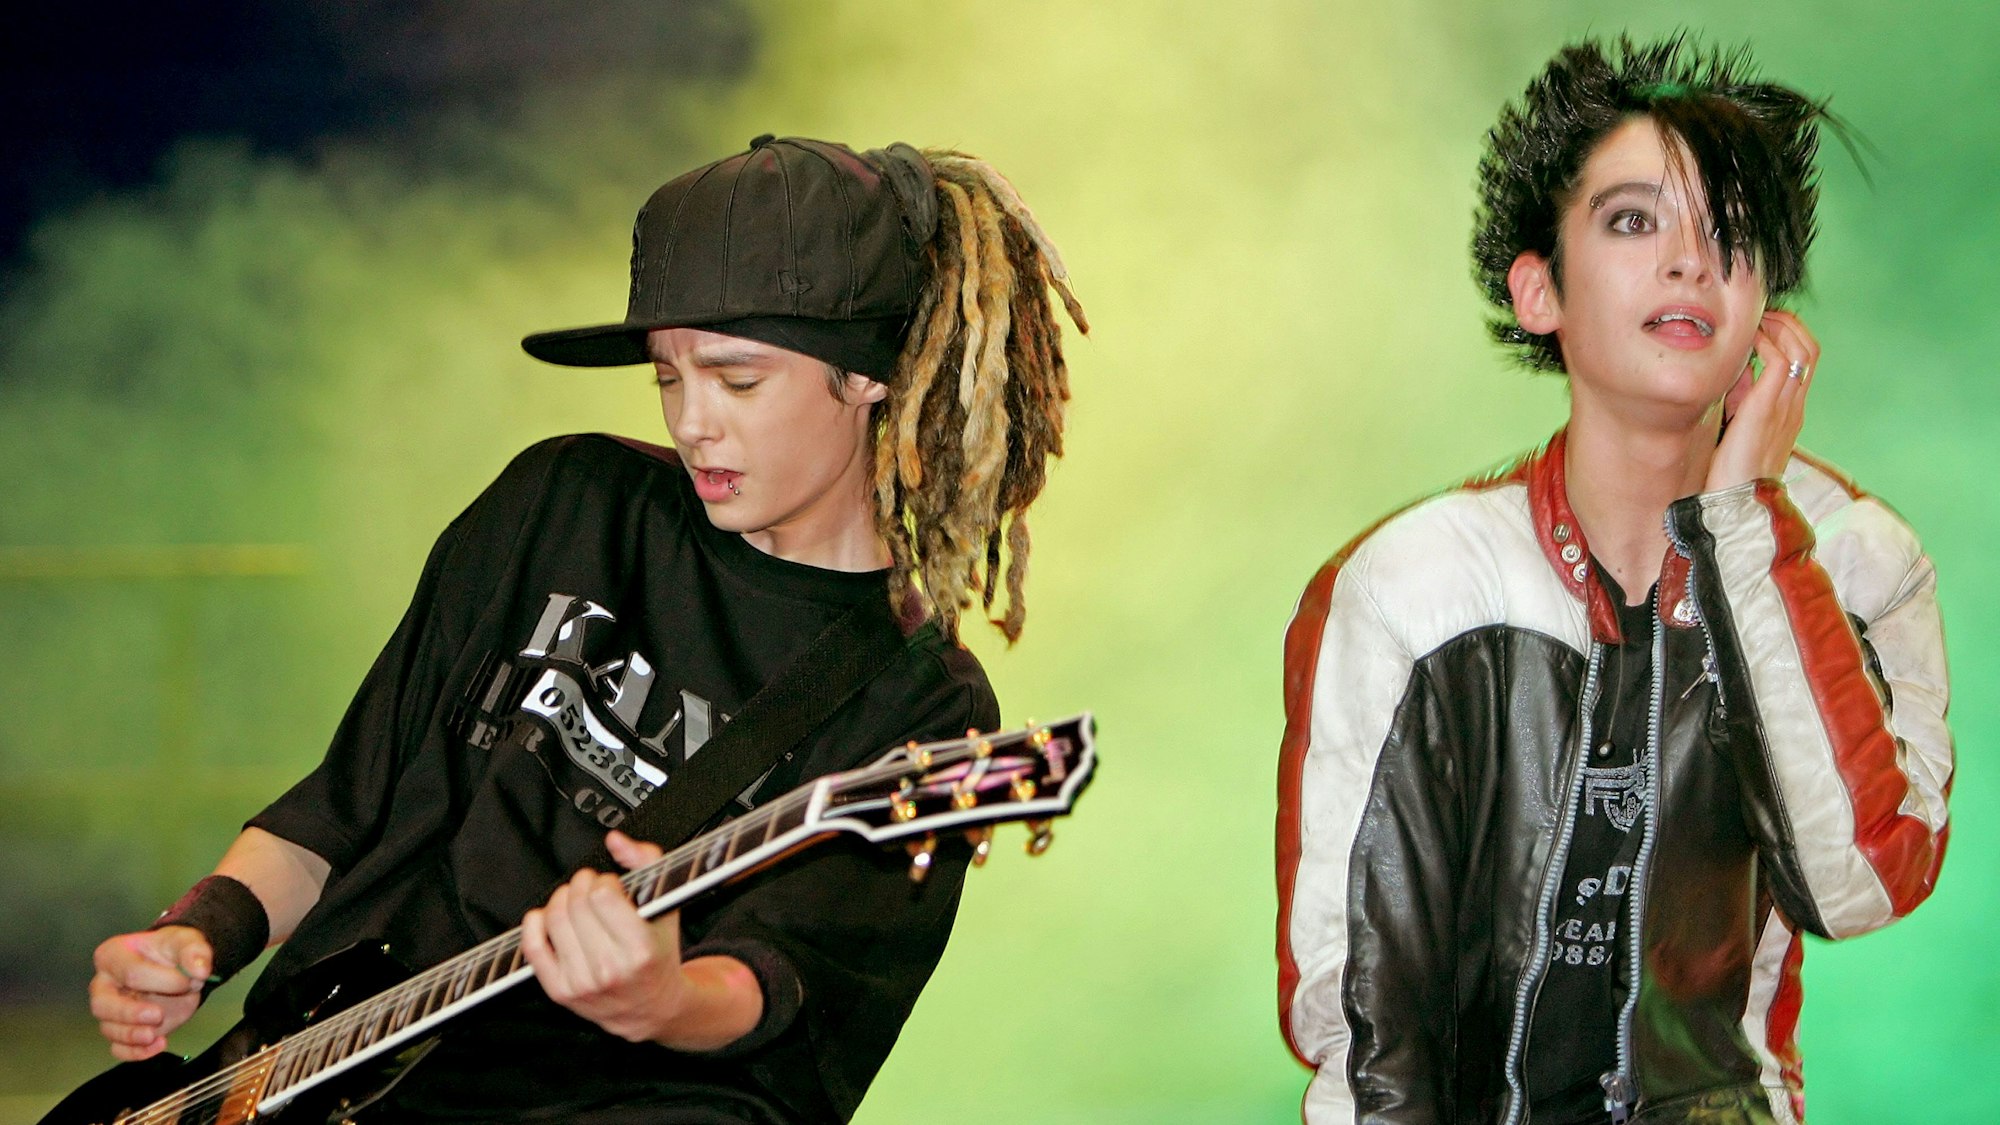 Tom (l) und sein Zwillingsbruder Bill Kaulitz von Tokio Hotel 2005 bei einem Live-Auftritt.